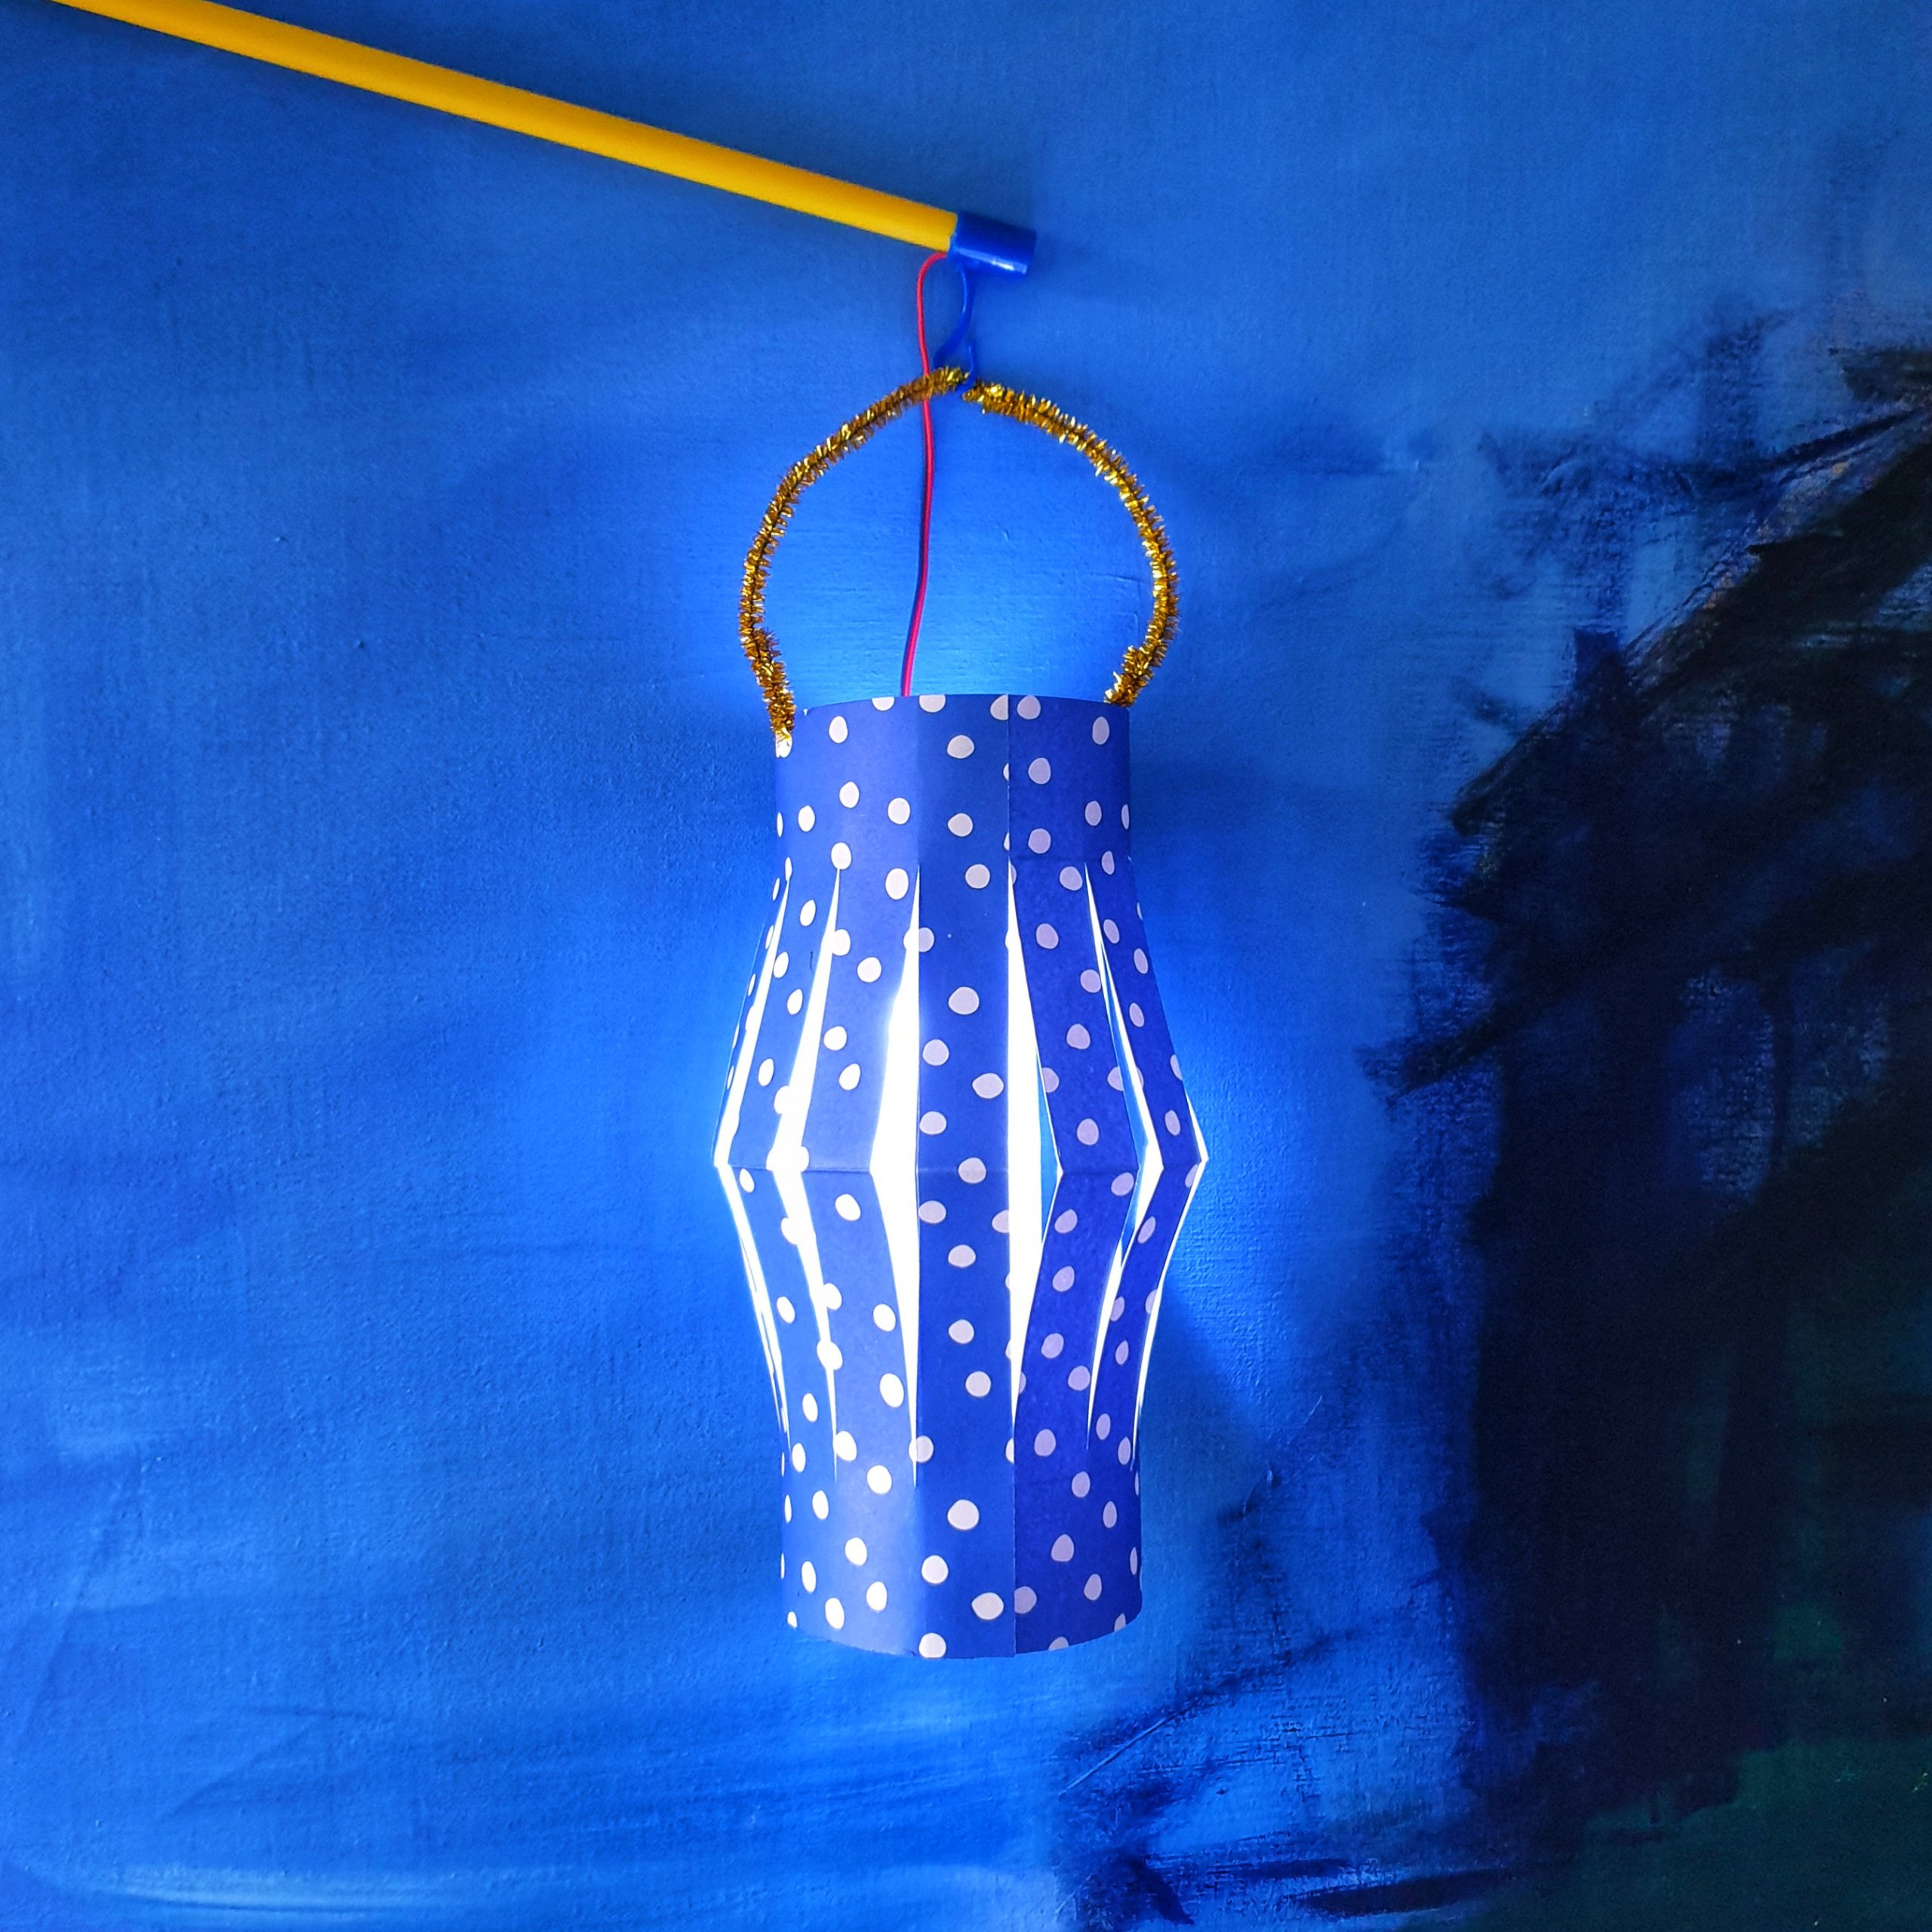 Mooie Sint Maarten lampion of lantaarn knutselen: heel veel ideeën. Een Chinese lantaarn kun je heel snel maken van gekleurd papier en een pijpenrager ofwel chenille draad.